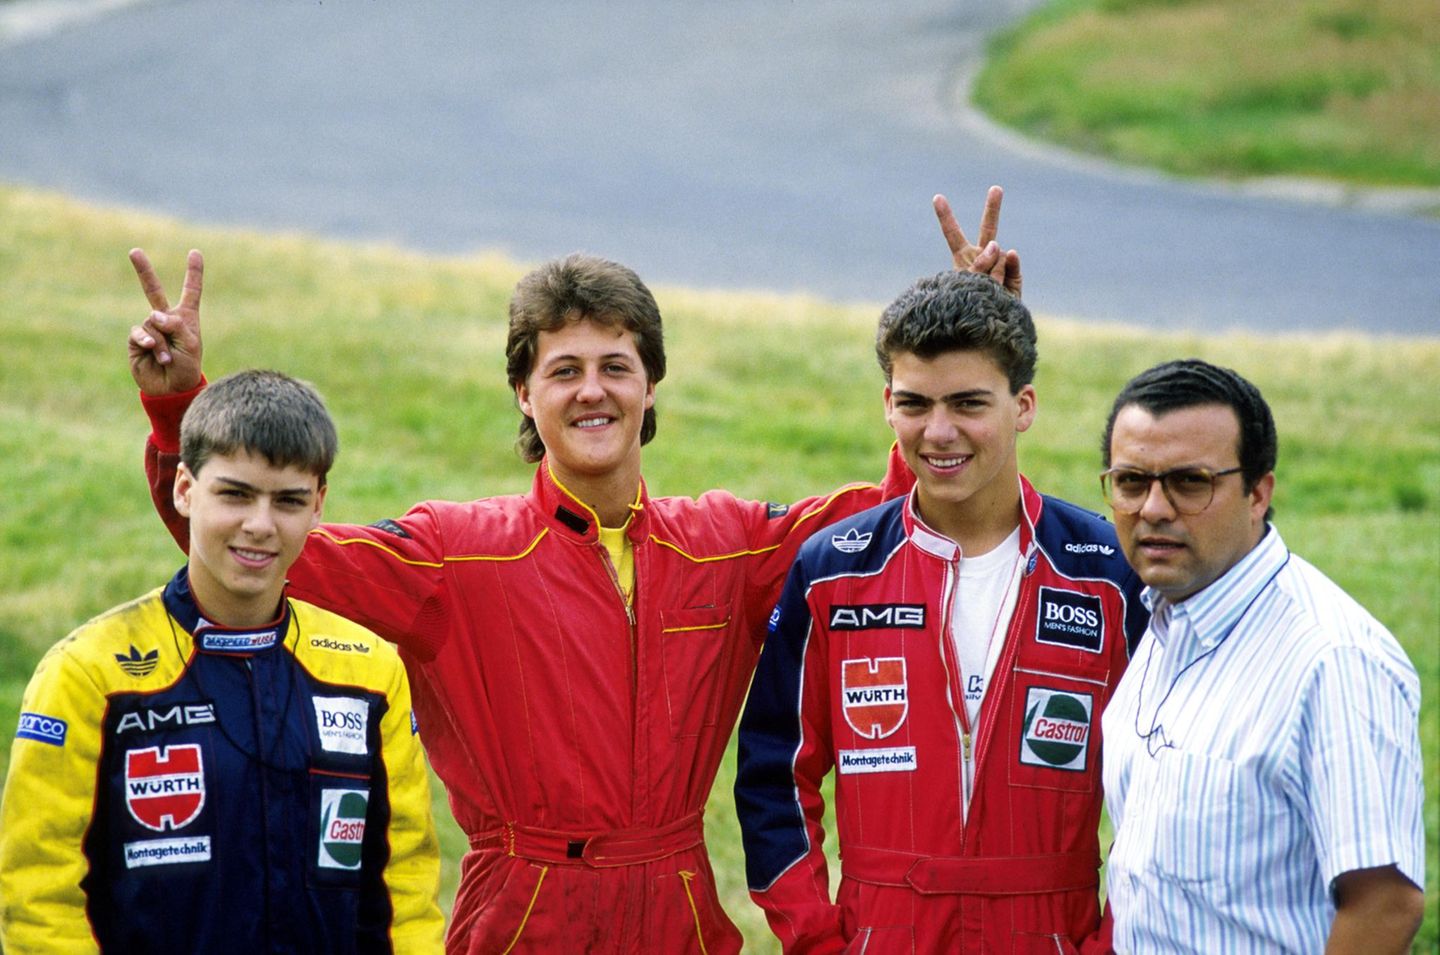 Juli 1988  Da wo alles begann: Michael Schumacher posiert während des Trainings auf der Kartbahn Kerpen-Manheim für ein Foto. Auch als er schon in den Formel-Klassen fuhr, nahm er weiterhin gelegentlich an Kartrennen teil.